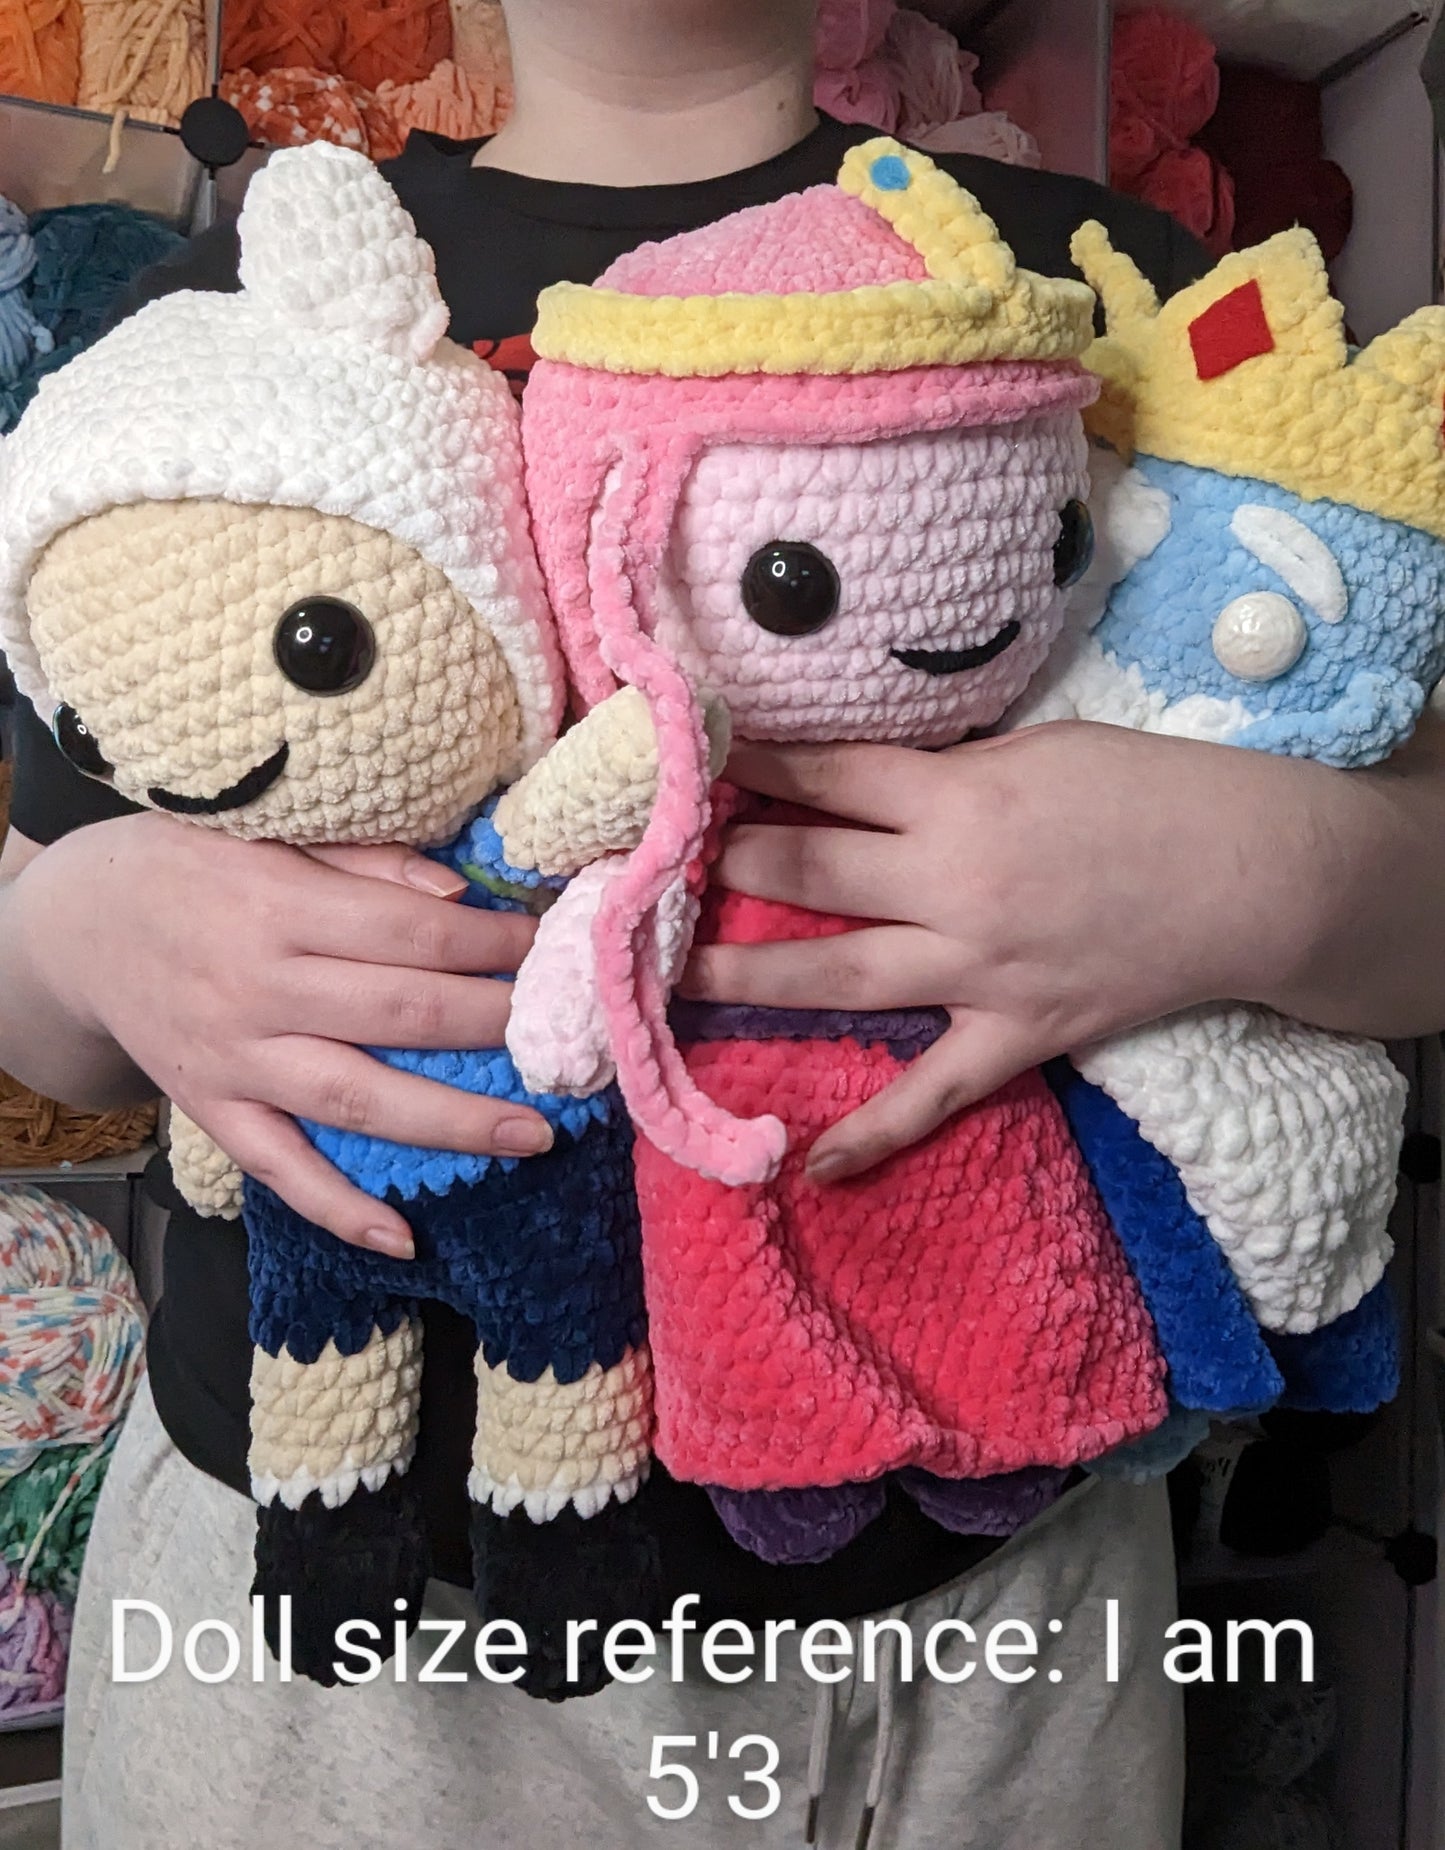 HECHO A PEDIDO Jumbo Princess Bubblegum también conocido como Bonnie Crochet Plushie